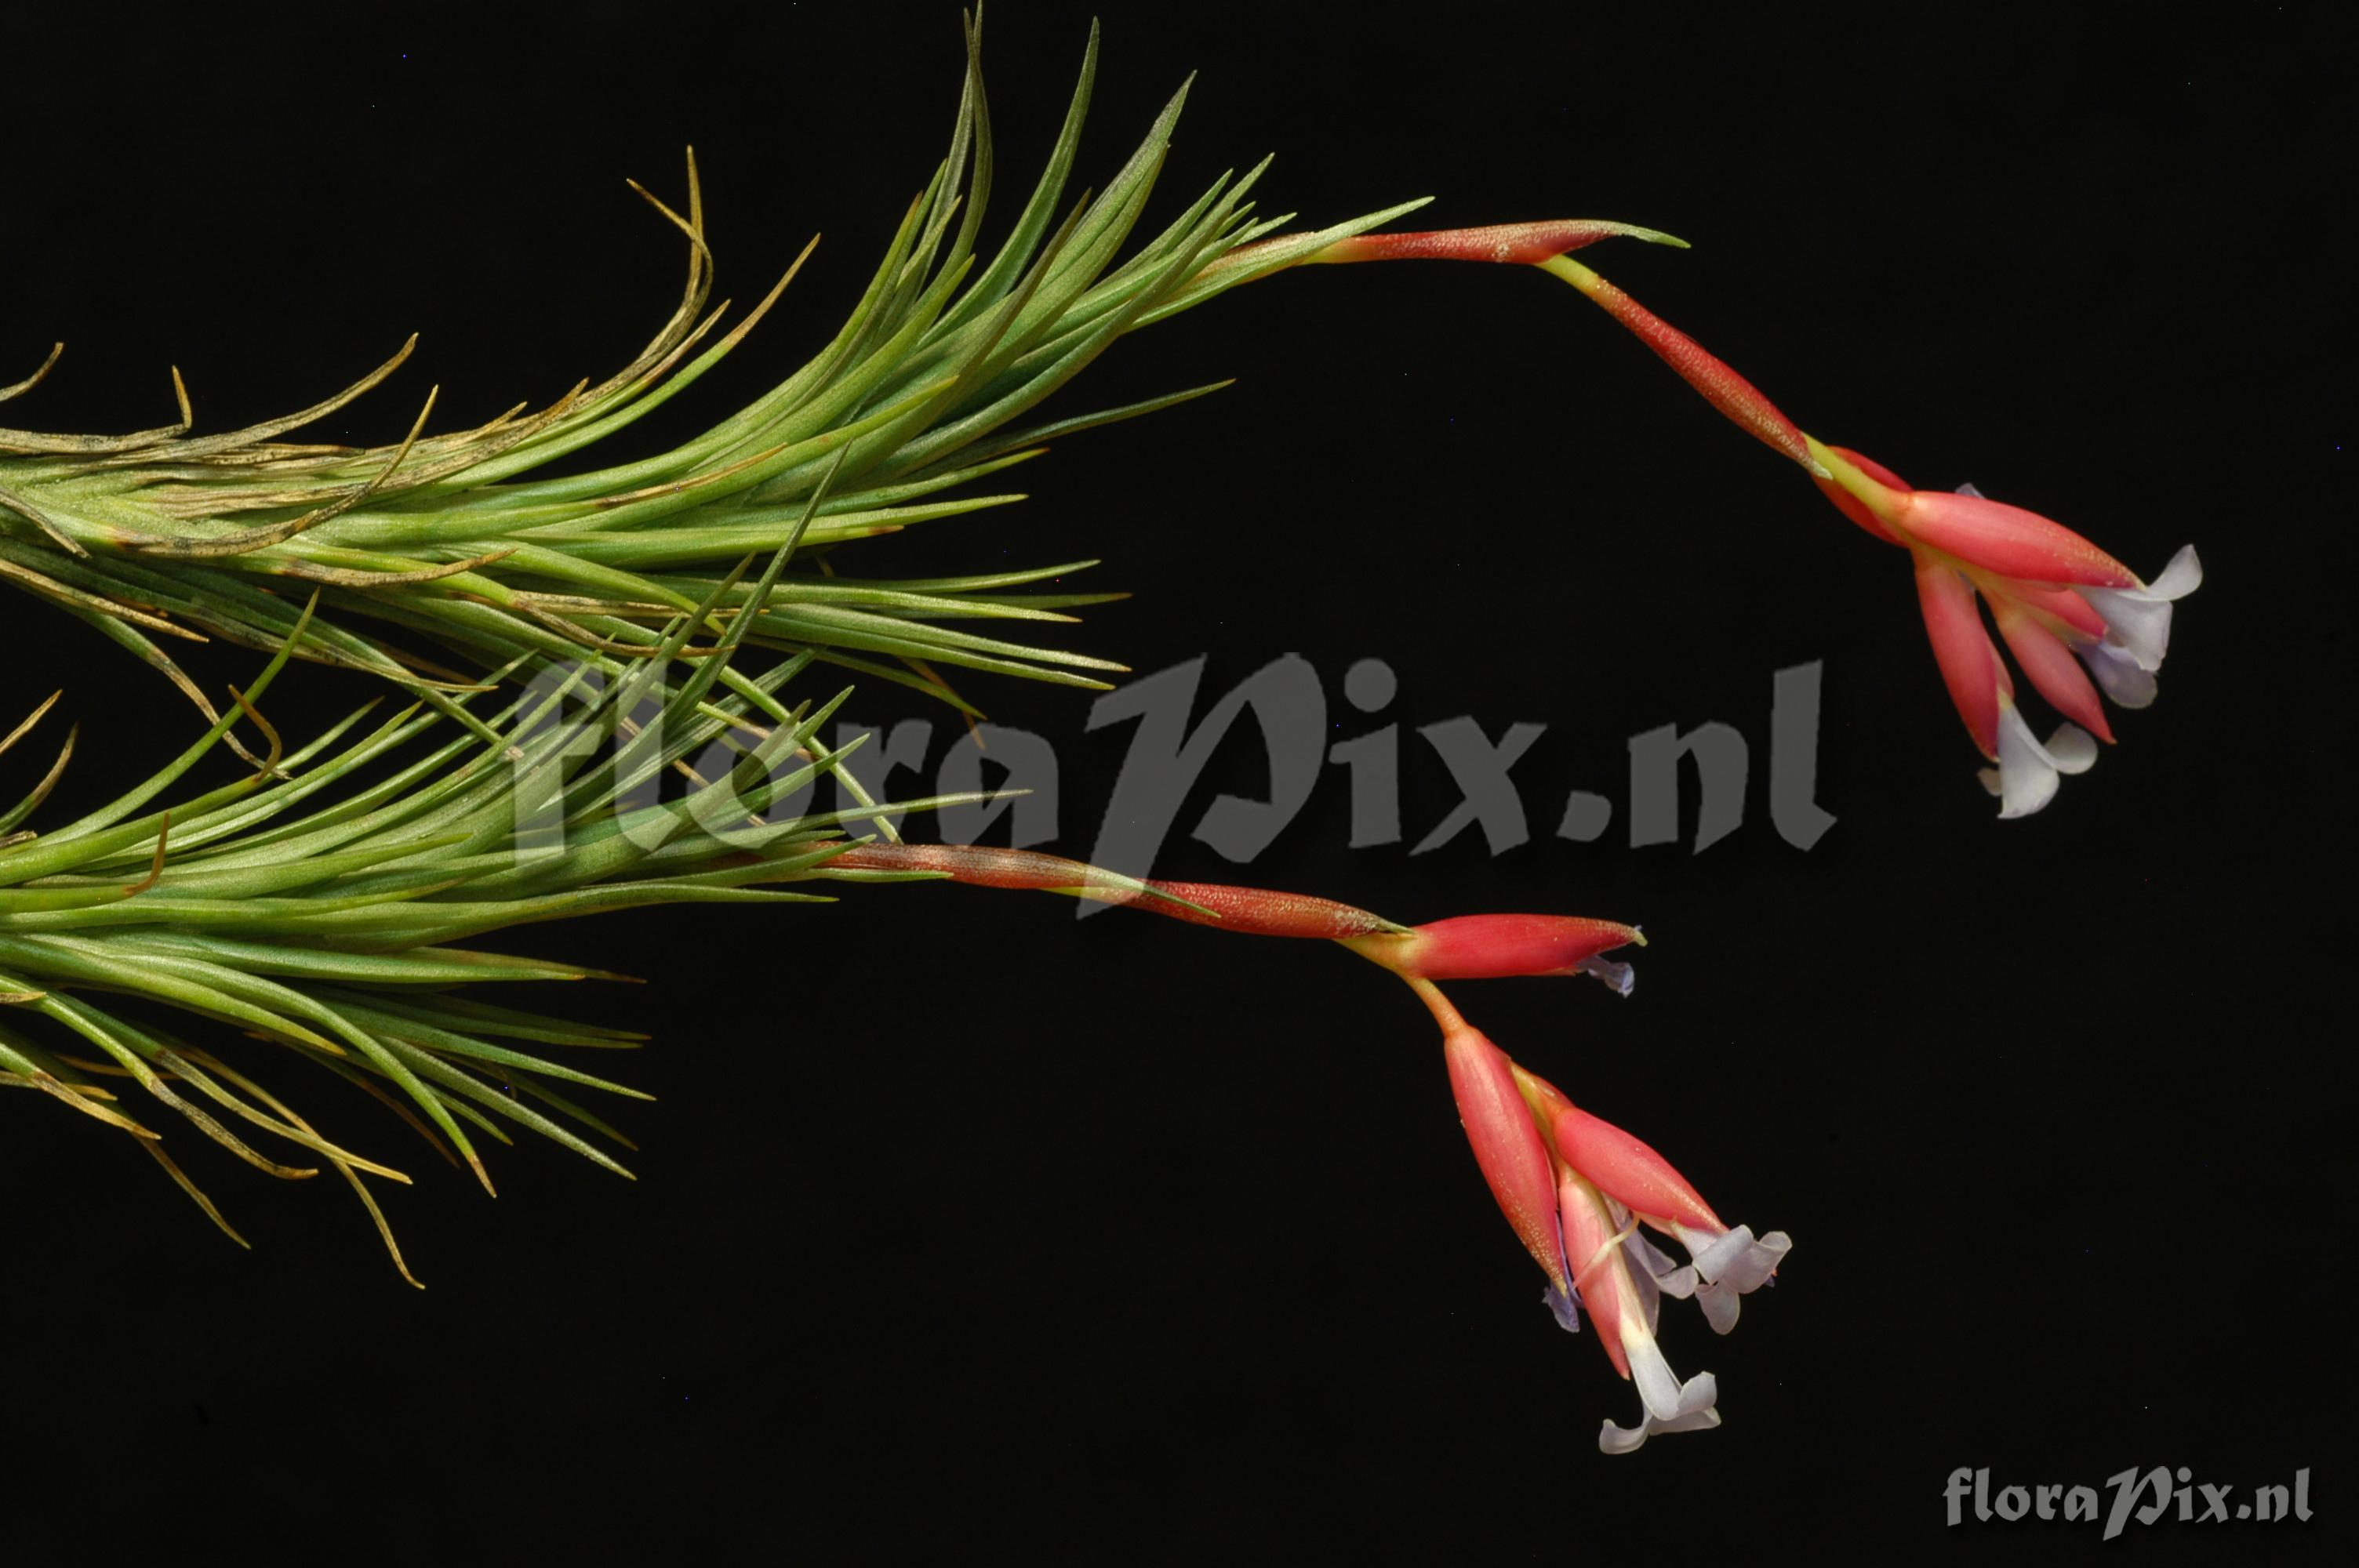 Tillandsia tenuifolia var. tenuifolia